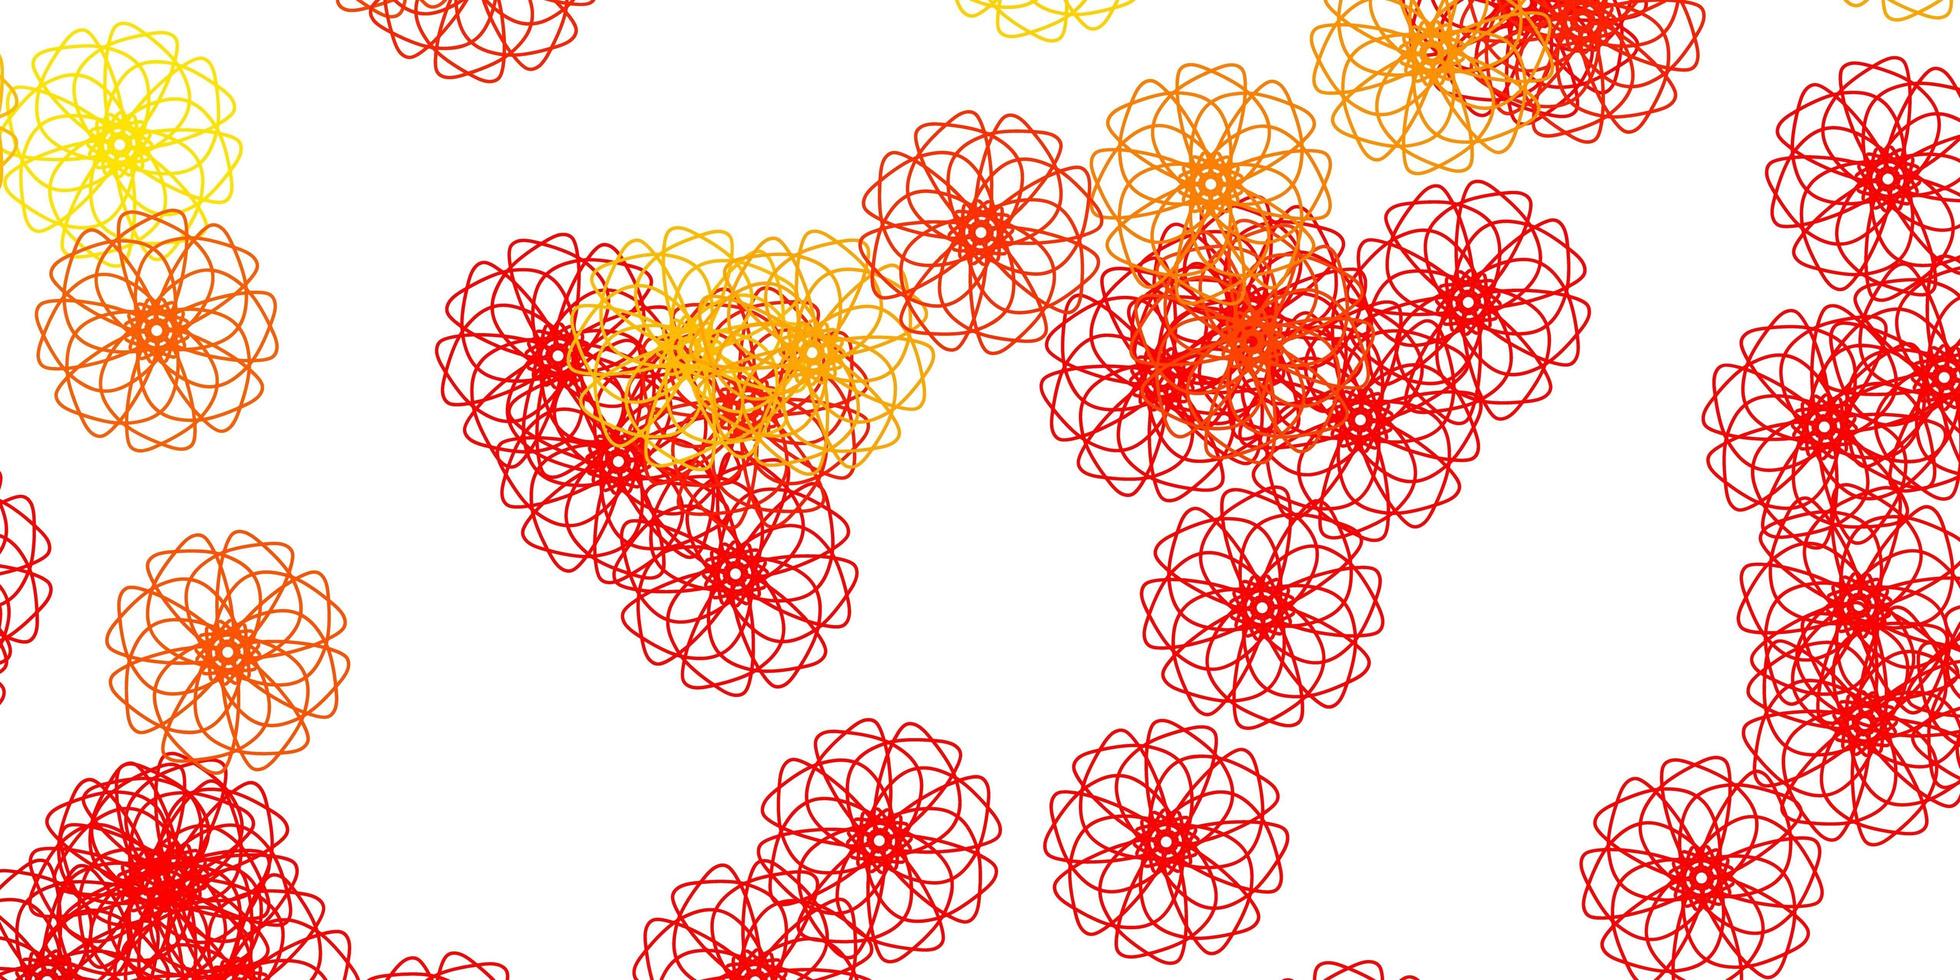 modelo de doodle de vetor vermelho e amarelo claro com flores.